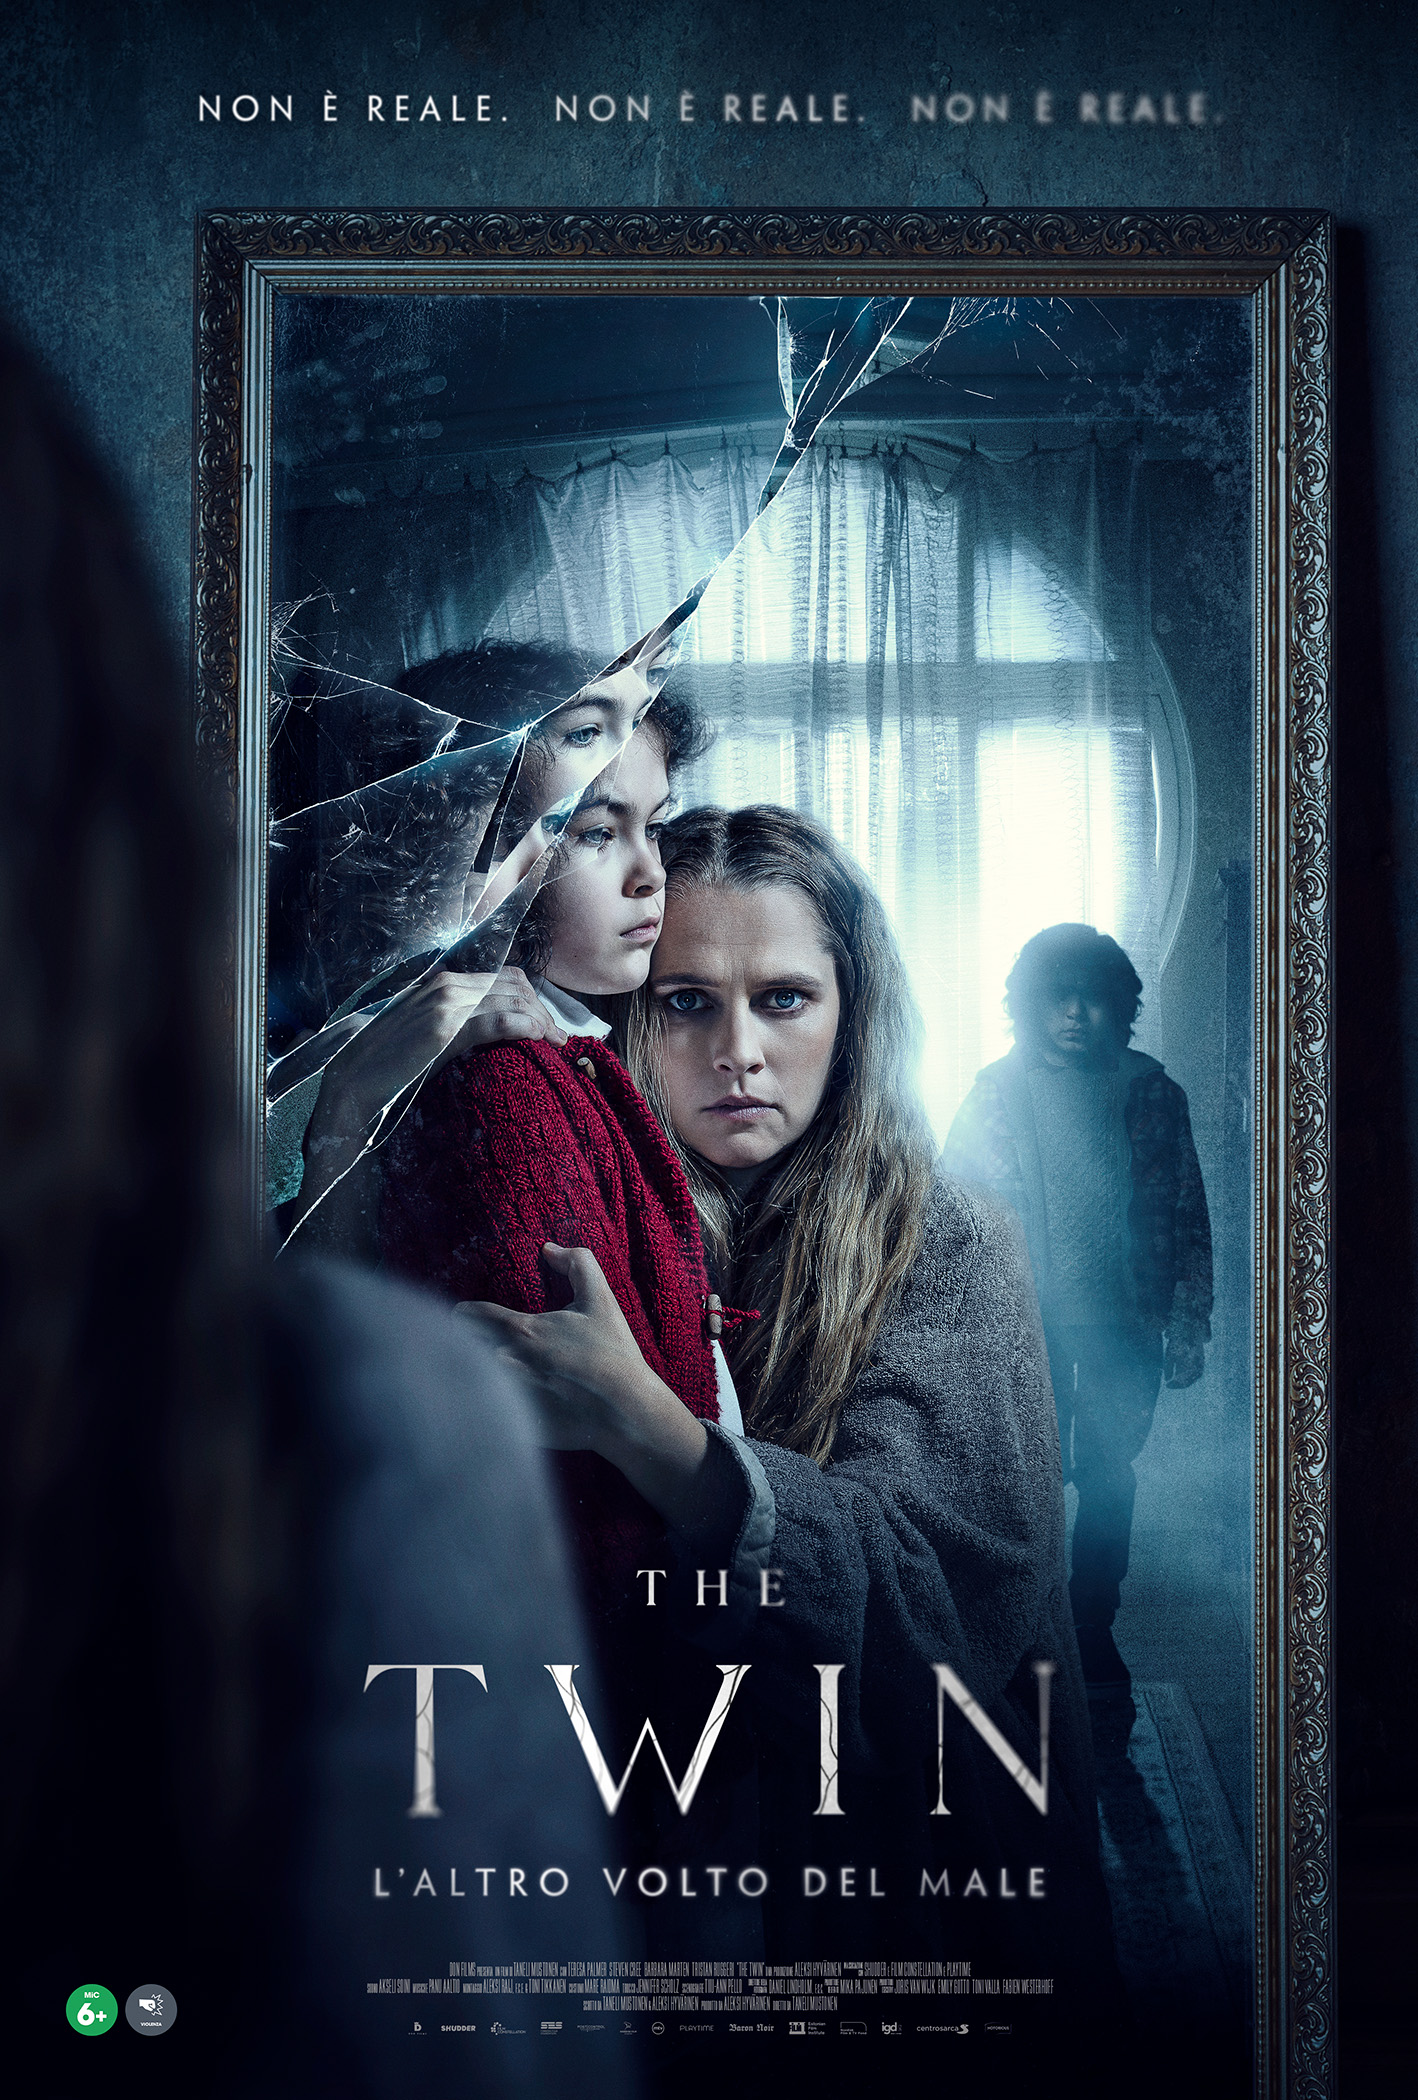 "The Twin - L'altro volto del male", dal 21 Luglio al Cinema - poster e trailer